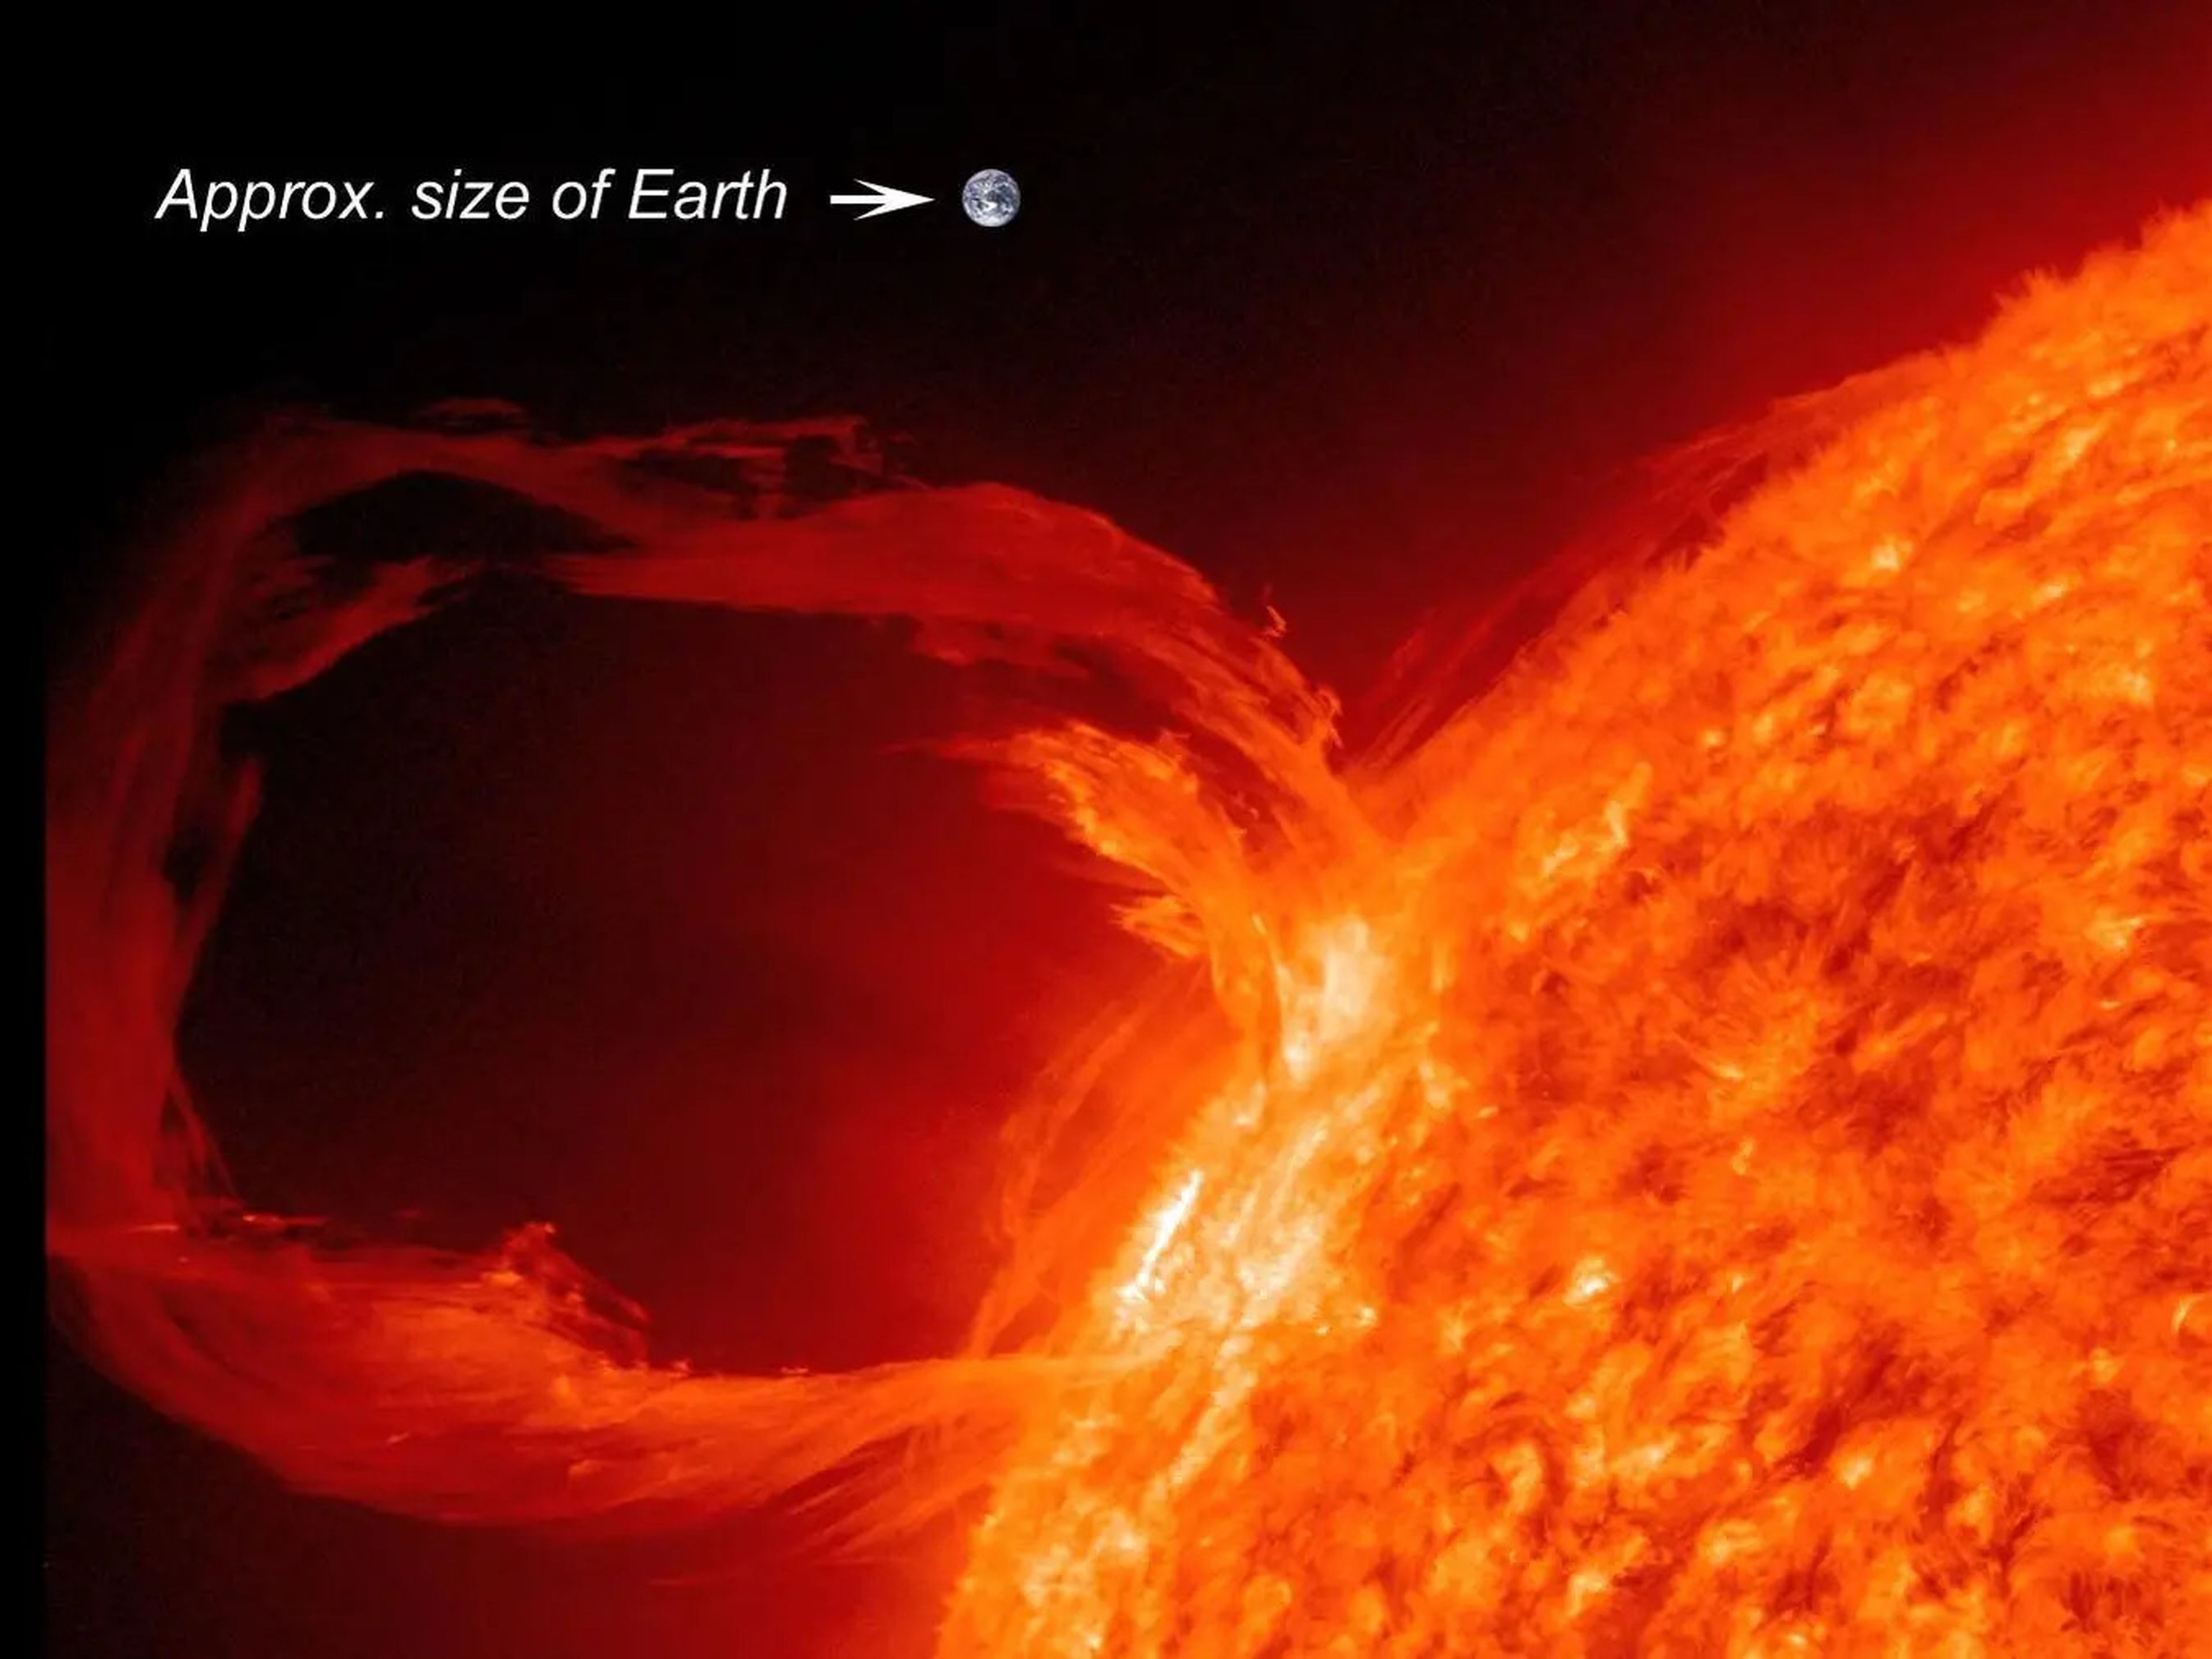 Un filamento solar en comparación con la Tierra a escala.